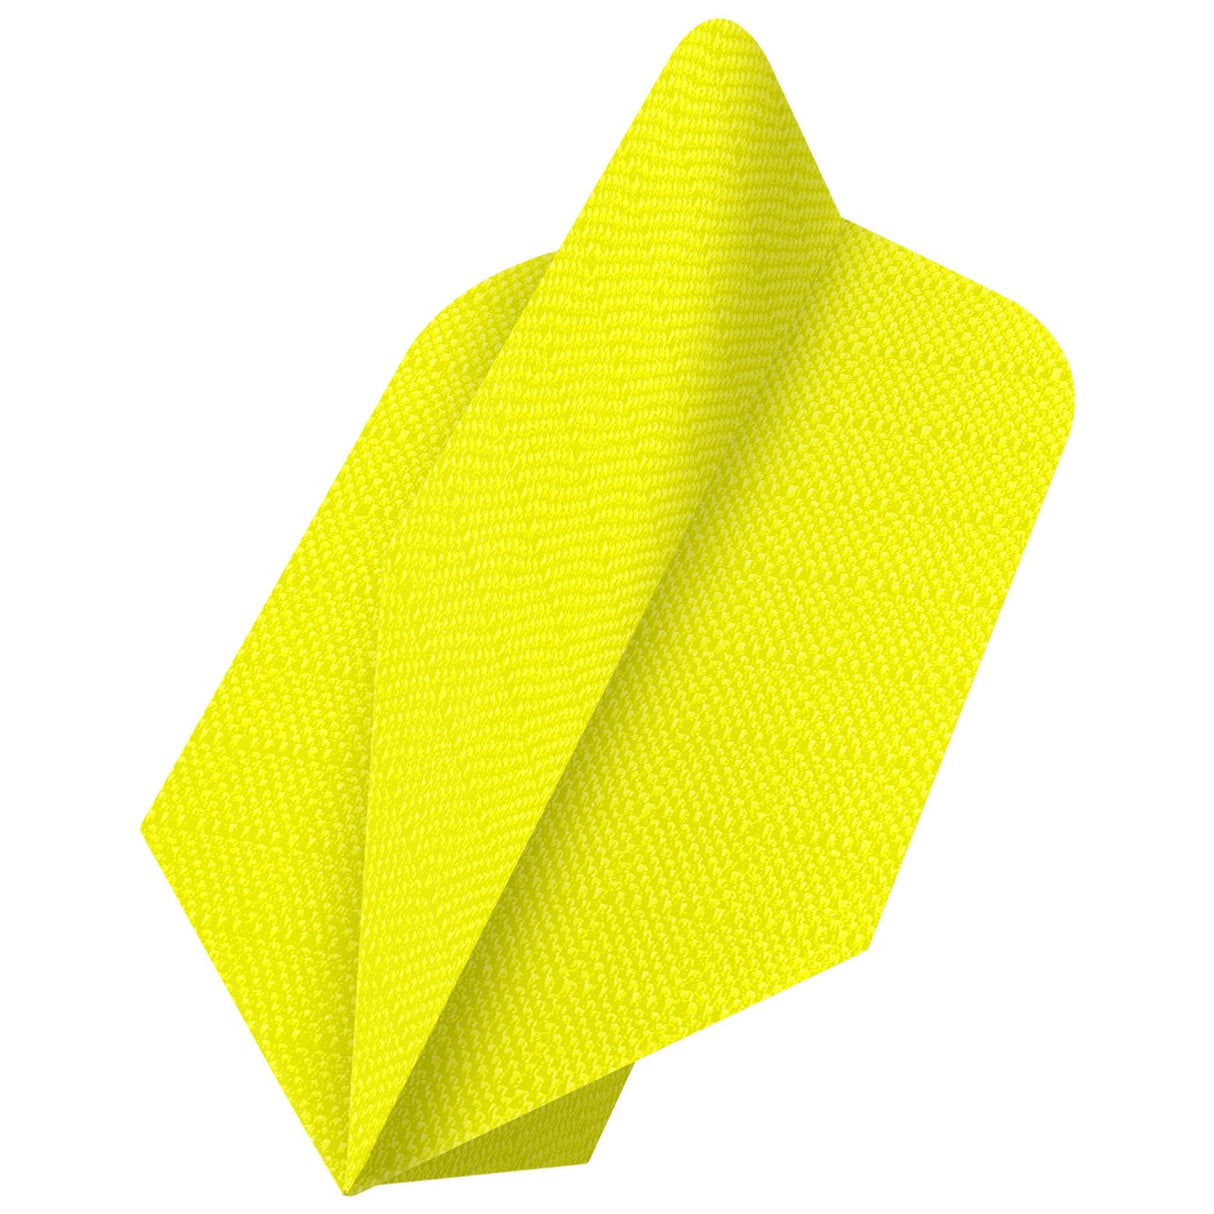 Designa Dart Flights - Fabric Rip Stop Nylon - Longlife - Slim